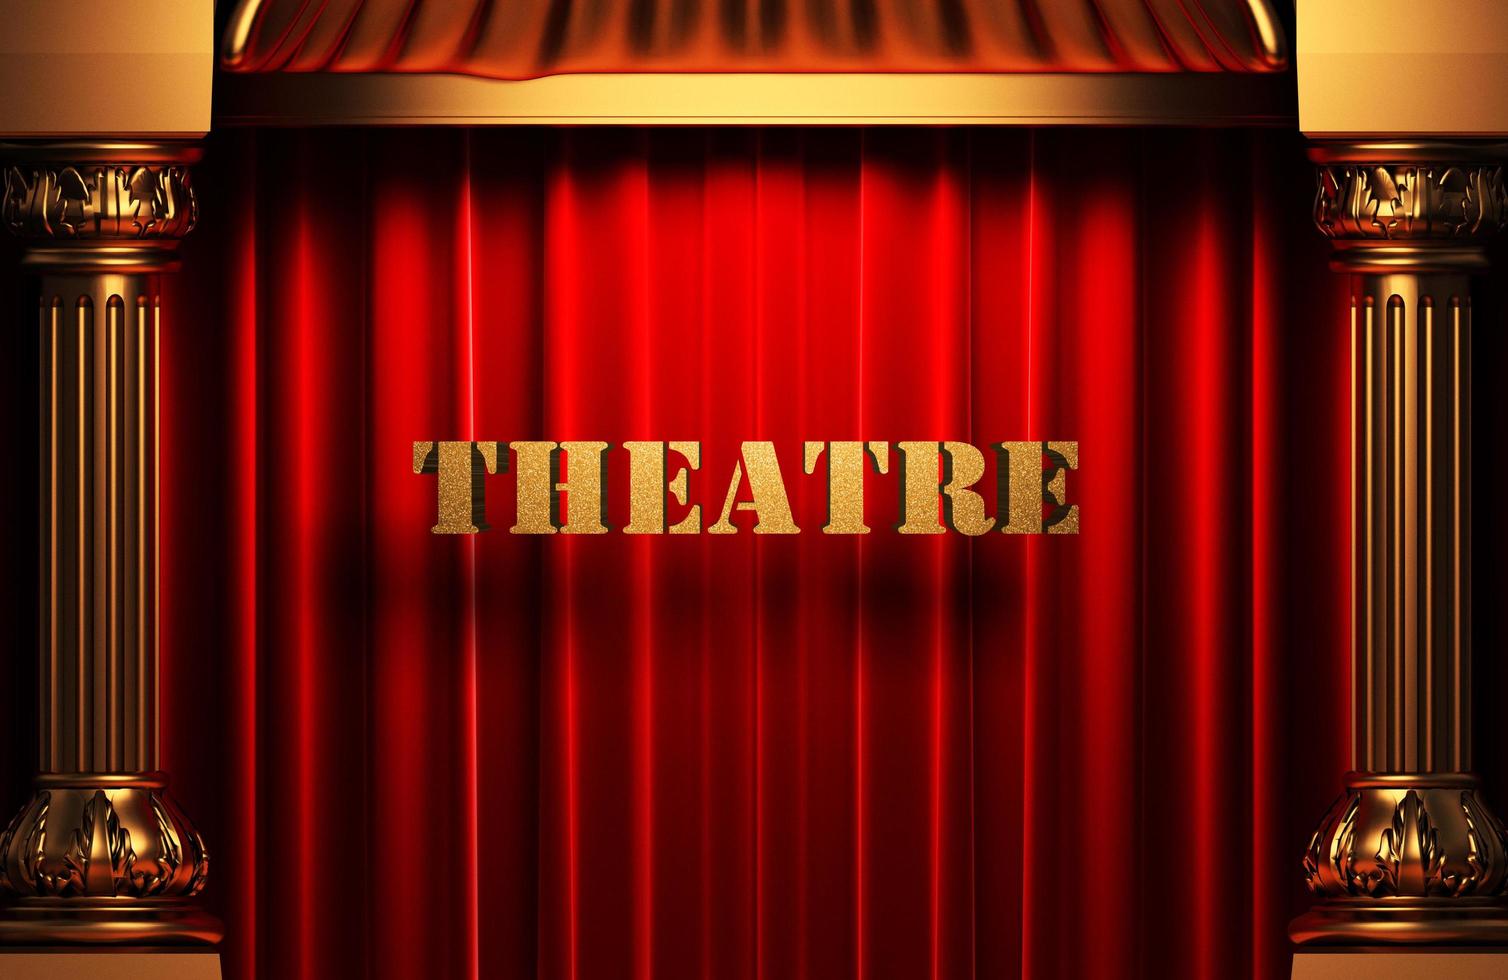 palavra dourada do teatro na cortina vermelha foto